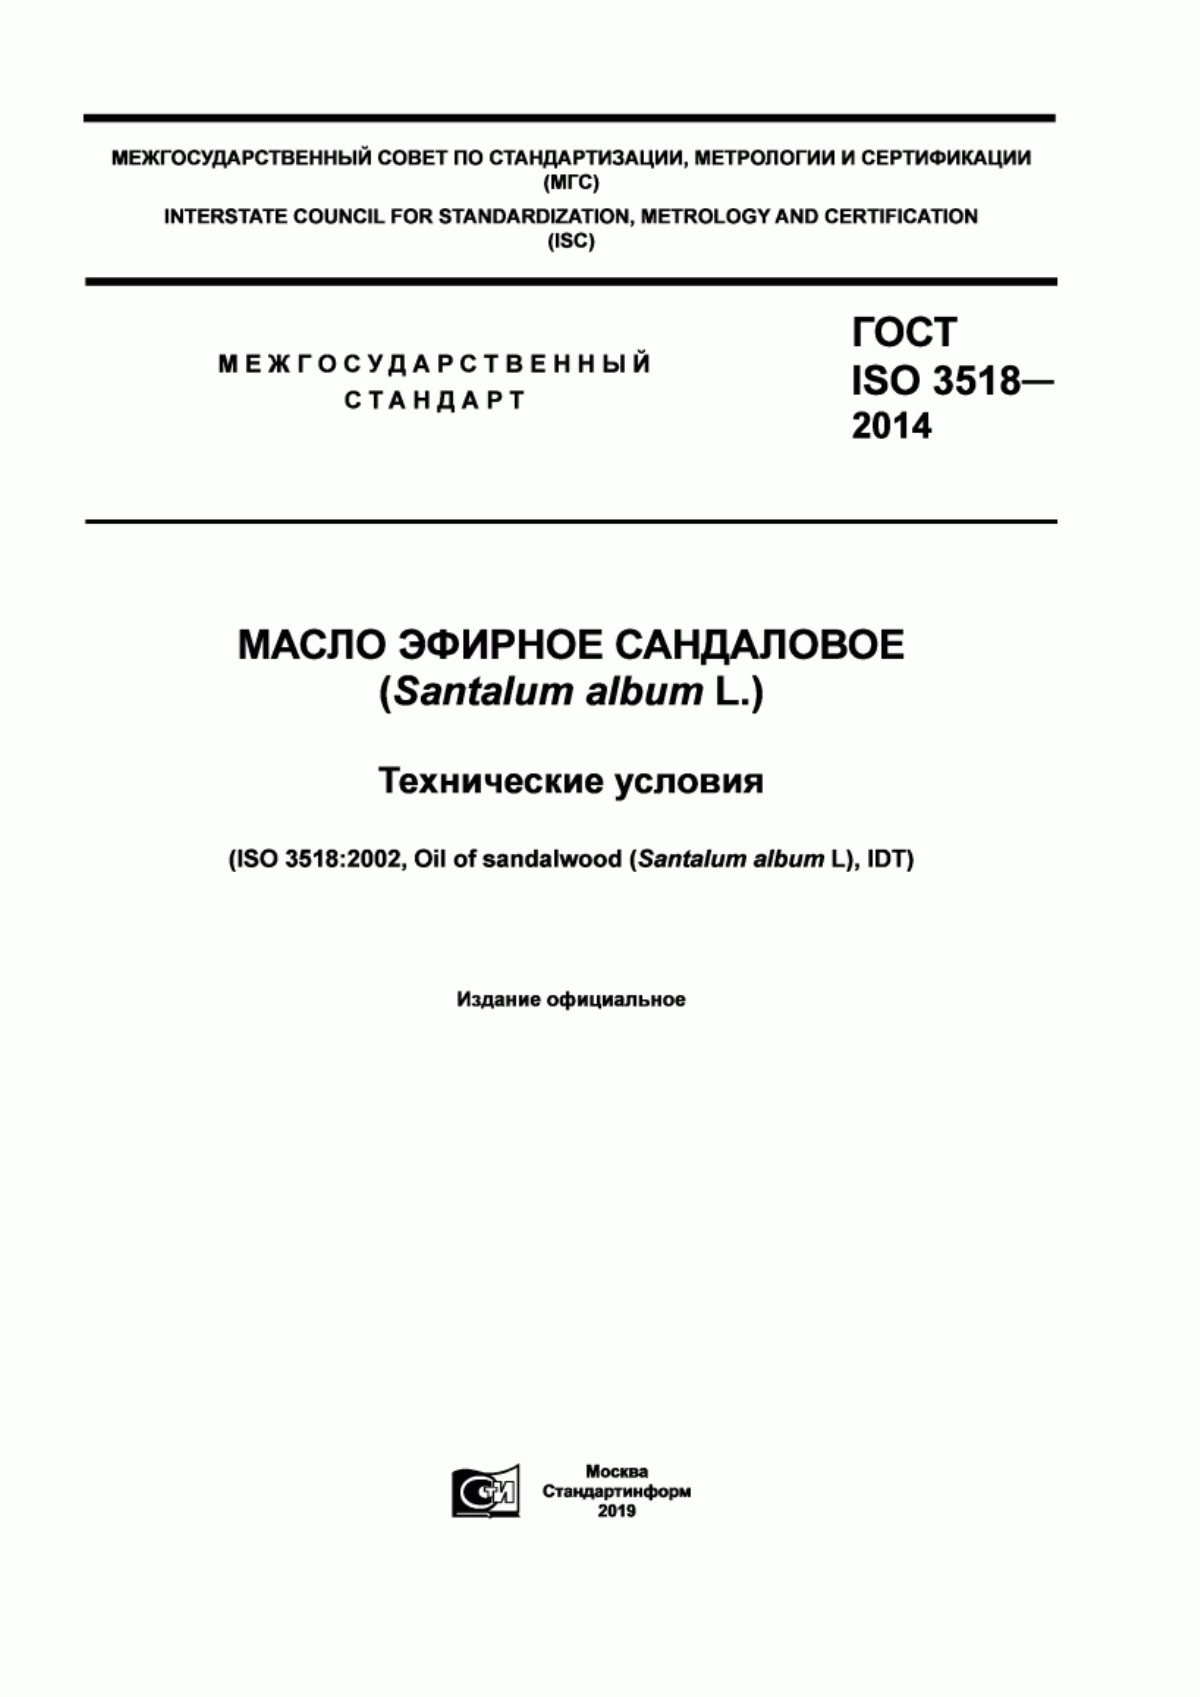 ГОСТ ISO 3518-2014 Масло эфирное сандаловое (Santalum album L.). Технические условия